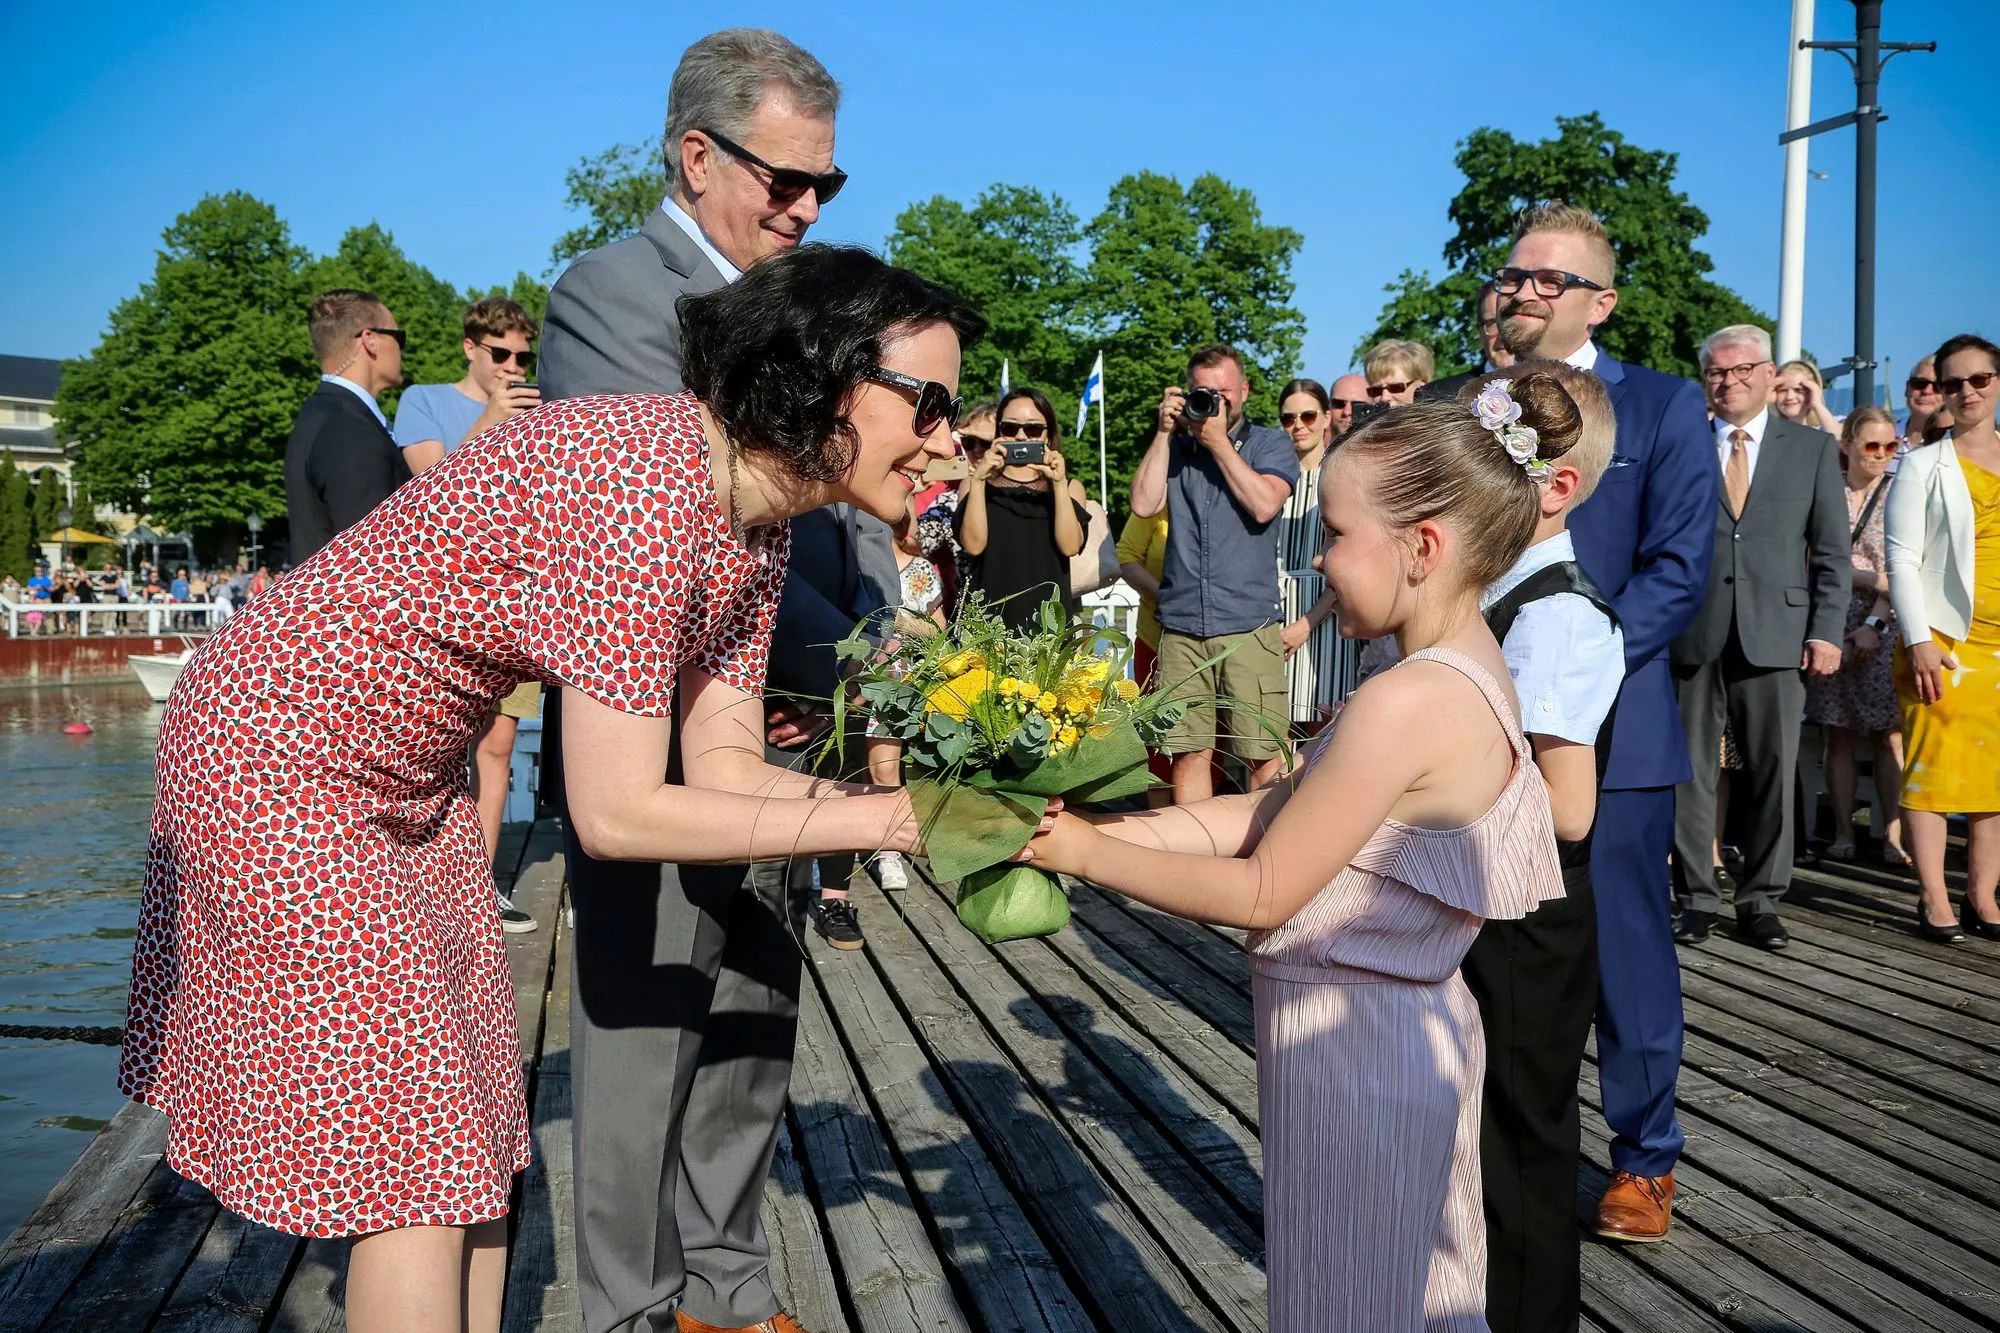 Merimaskun koulun oppilaat Lumi Mäki ja Jeremias Randell ojensivat kukkia Jenni Haukiolle presidenttiparin saapuessa Kultarantaan kesällä 2019.